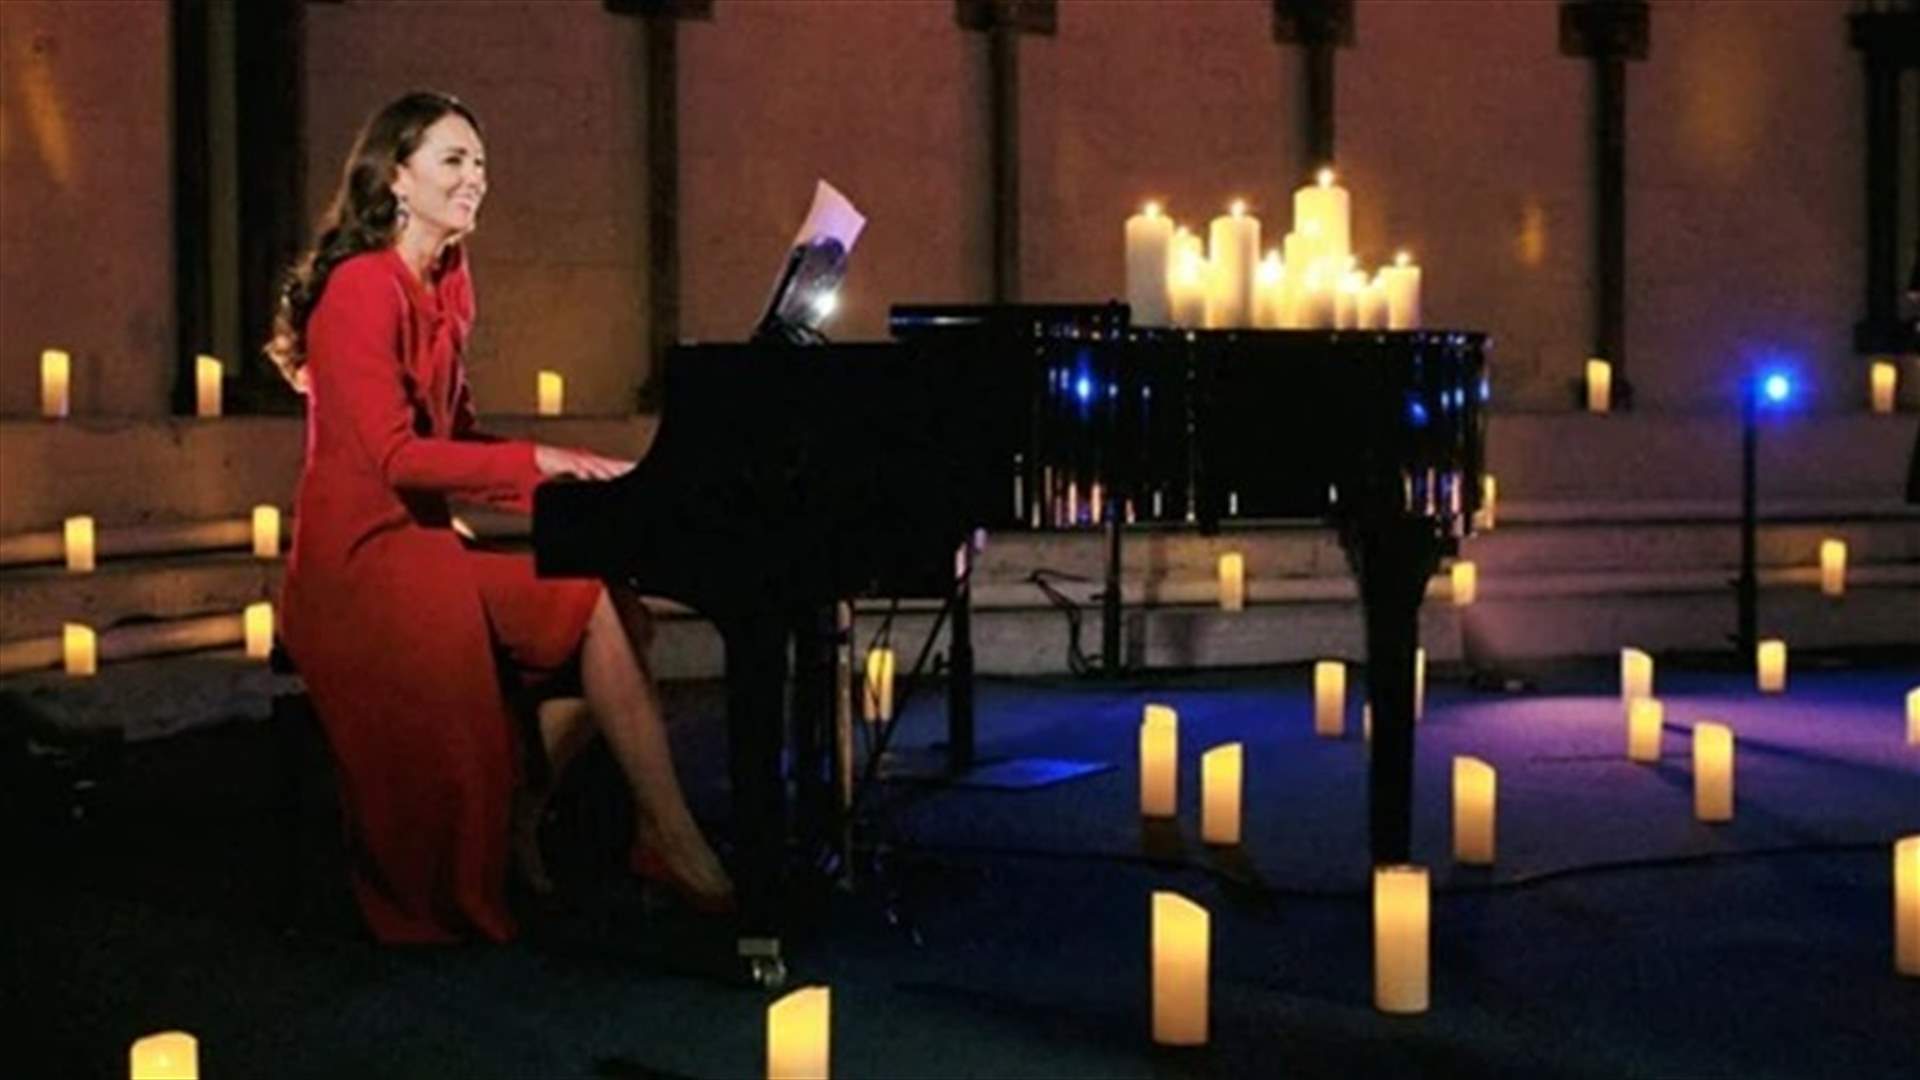 للمرّة الأولى...كيت ميدلتون تعزف البيانو أمام الجمهور في عيد الميلاد (فيديو)